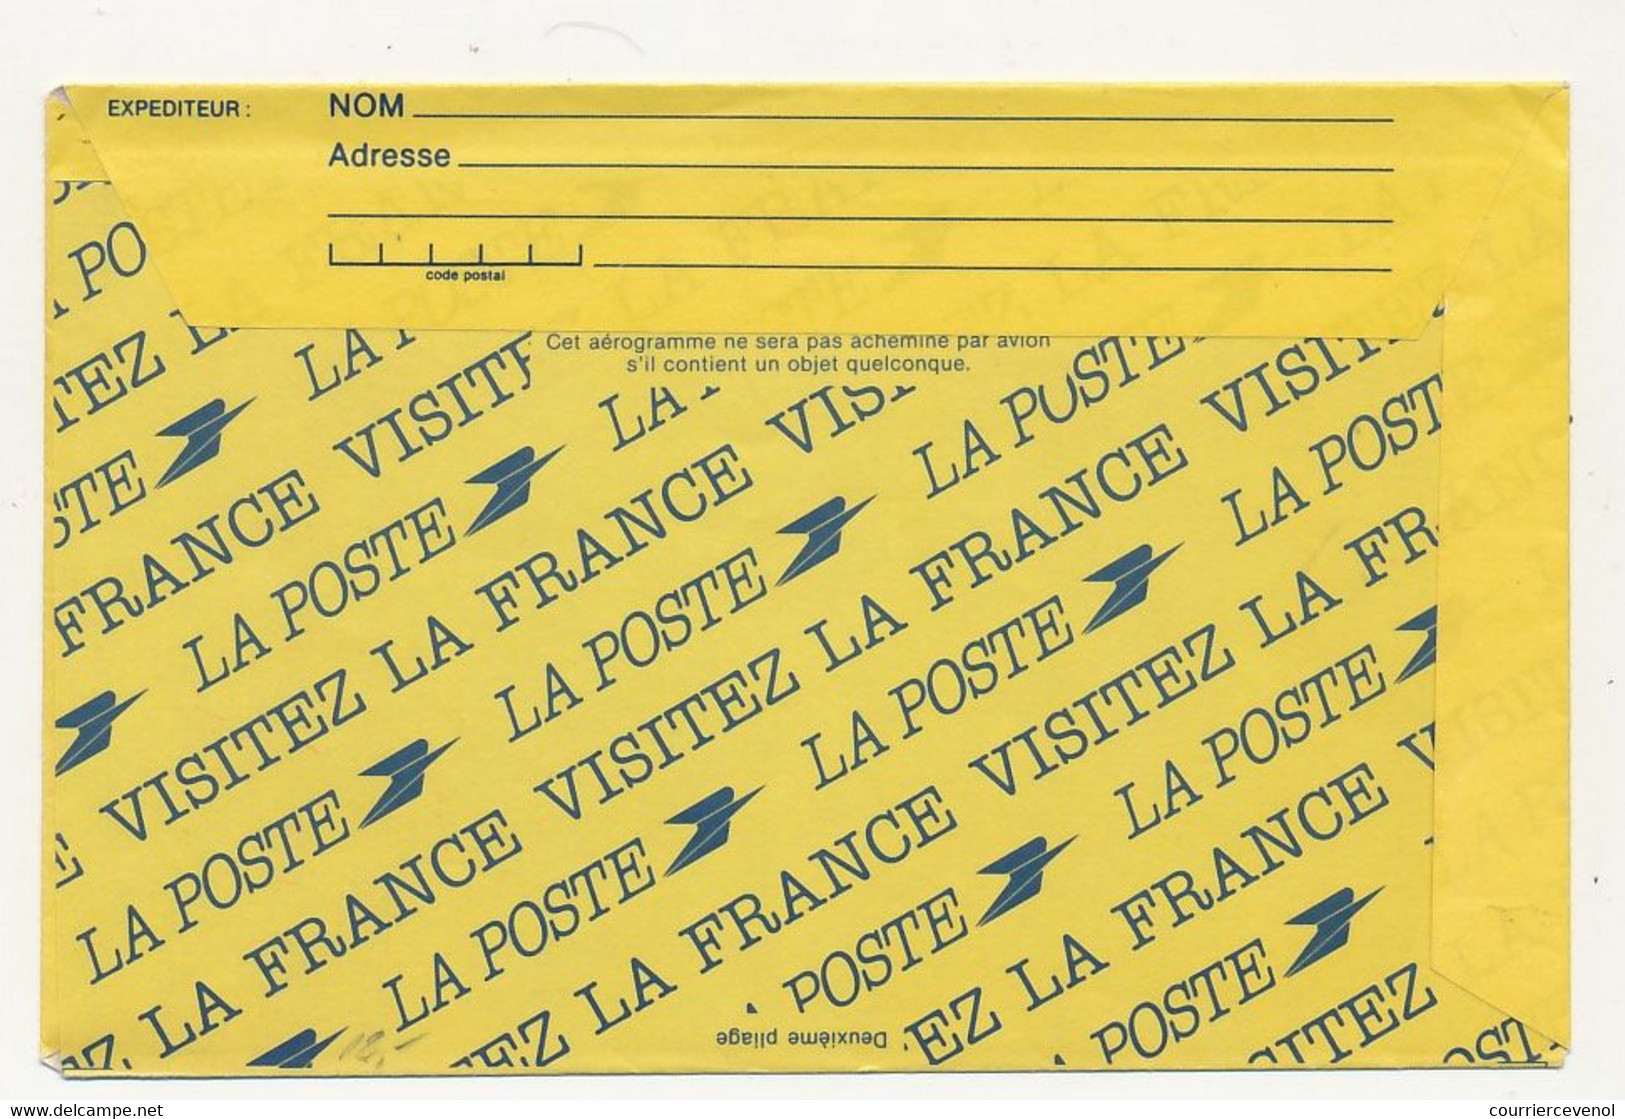 FRANCE => Aérogramme 3,50 Repiquage "36e Salon De L'Aéronautique... Le Bourget" 31/5/1985 - Luchtpostbladen